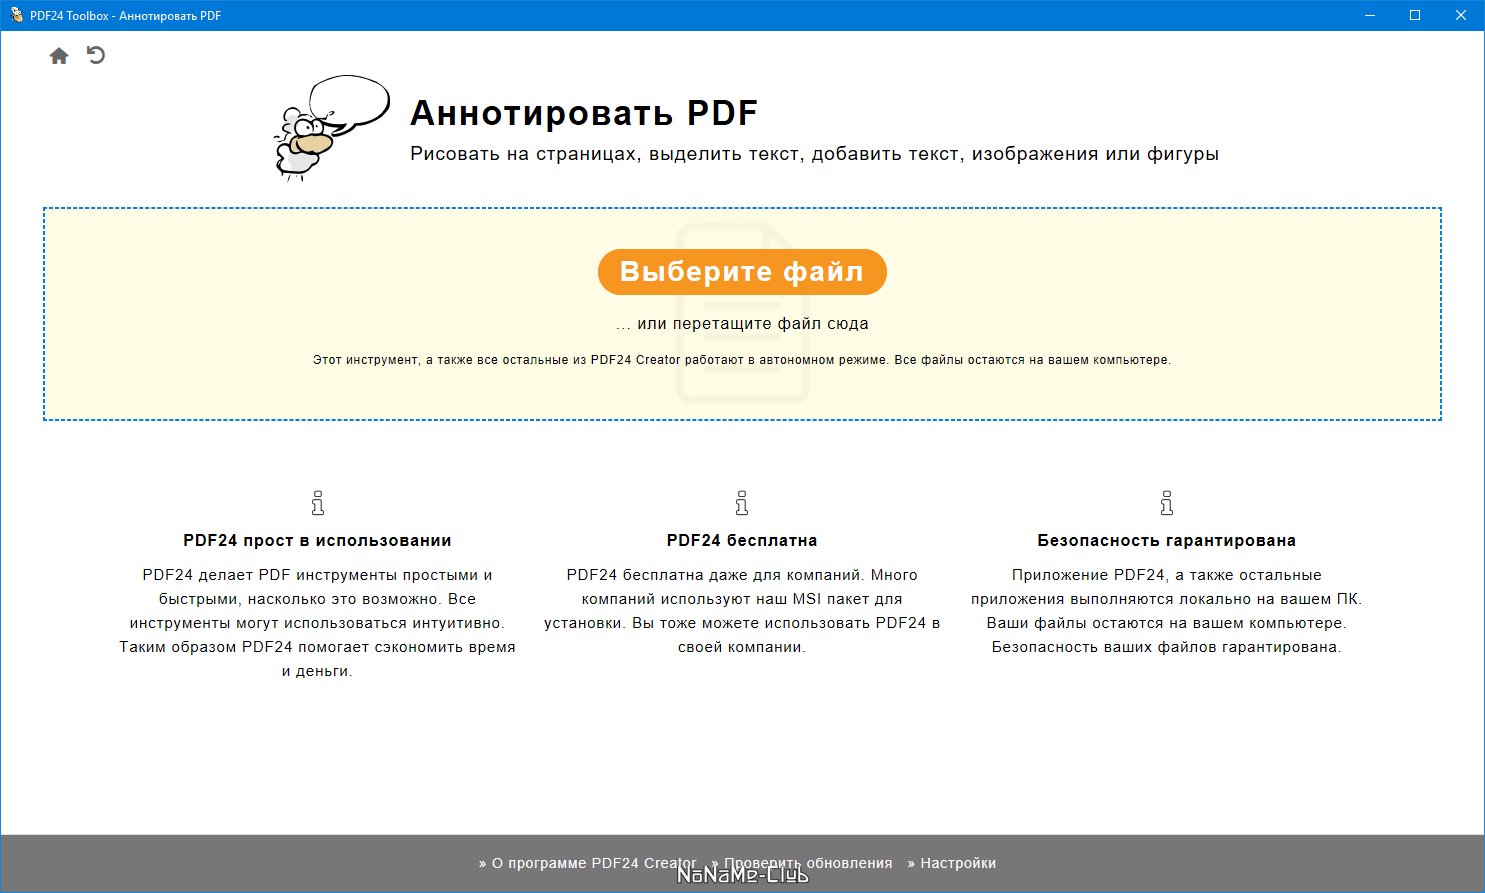 PDF24 Creator 10.8.0 [Multi/Ru]